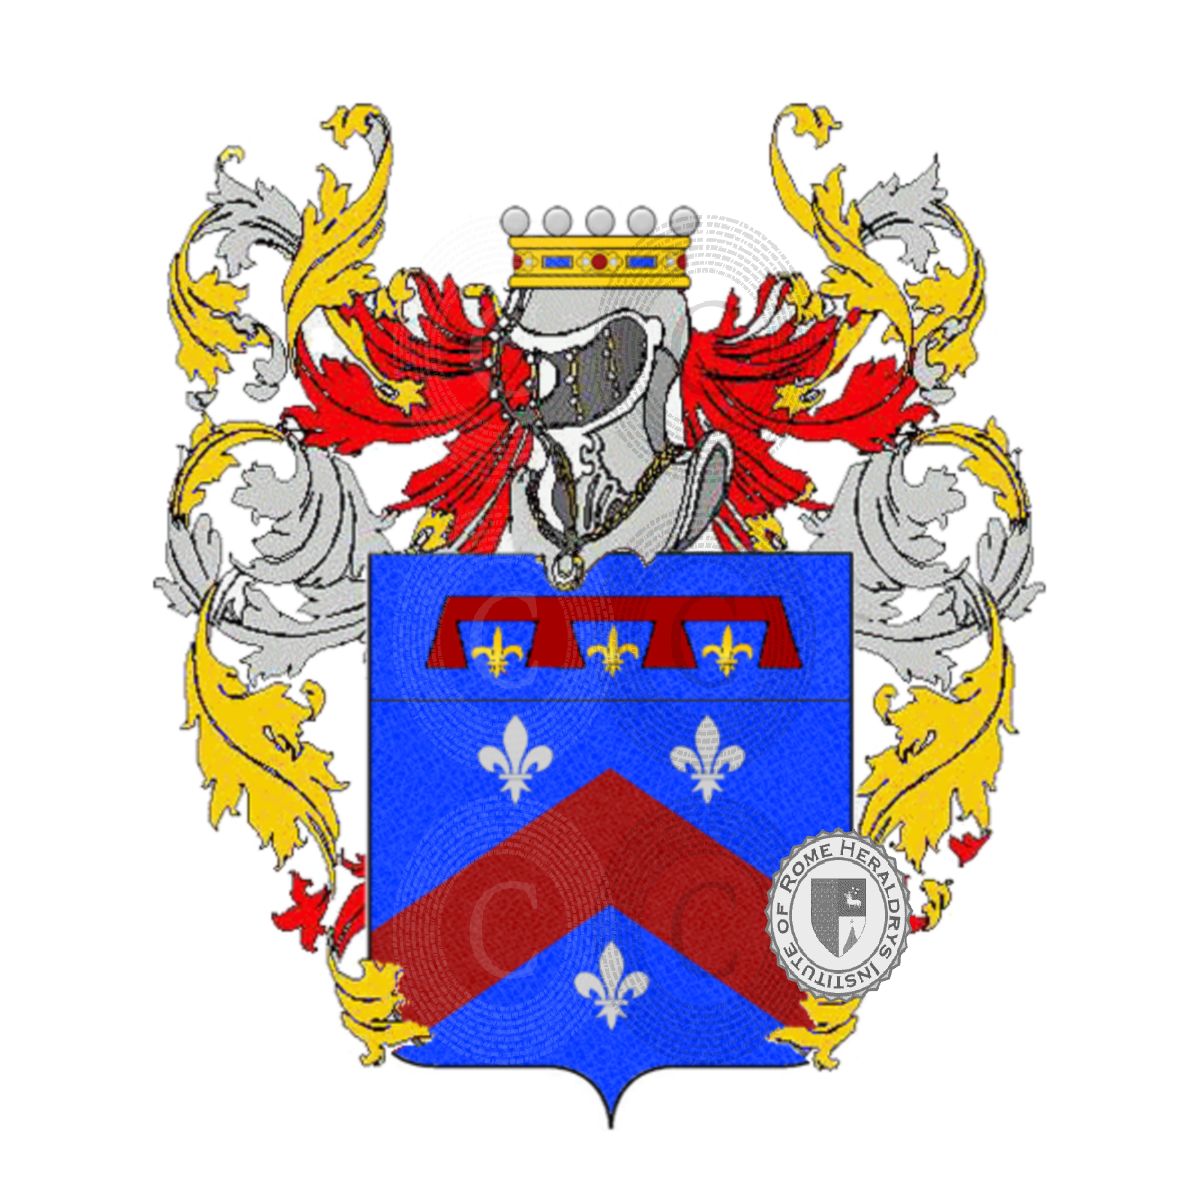 Coat of arms of familyNicolini, Niccolini,Nicolini Sirigatti